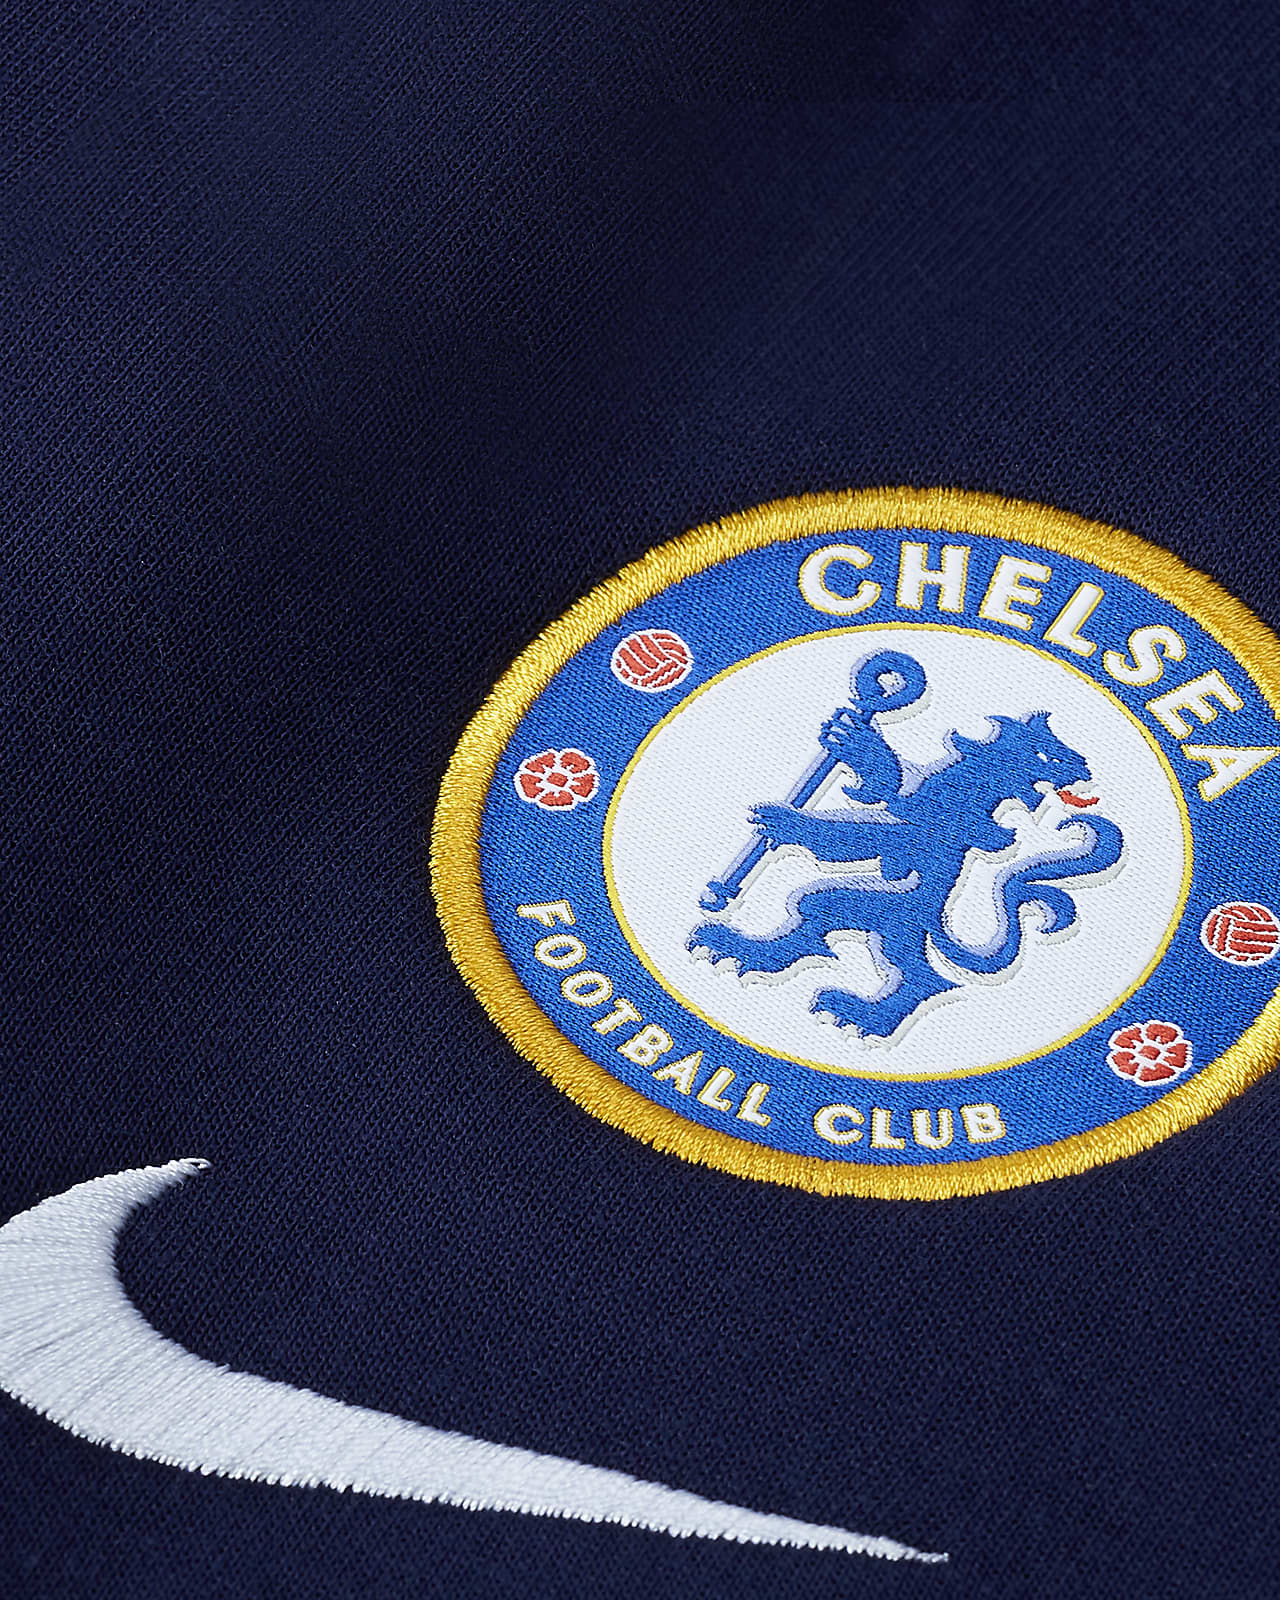 √ Chelsea Logo Png / Chelsea Logo Transparent Png Premier League Club ...